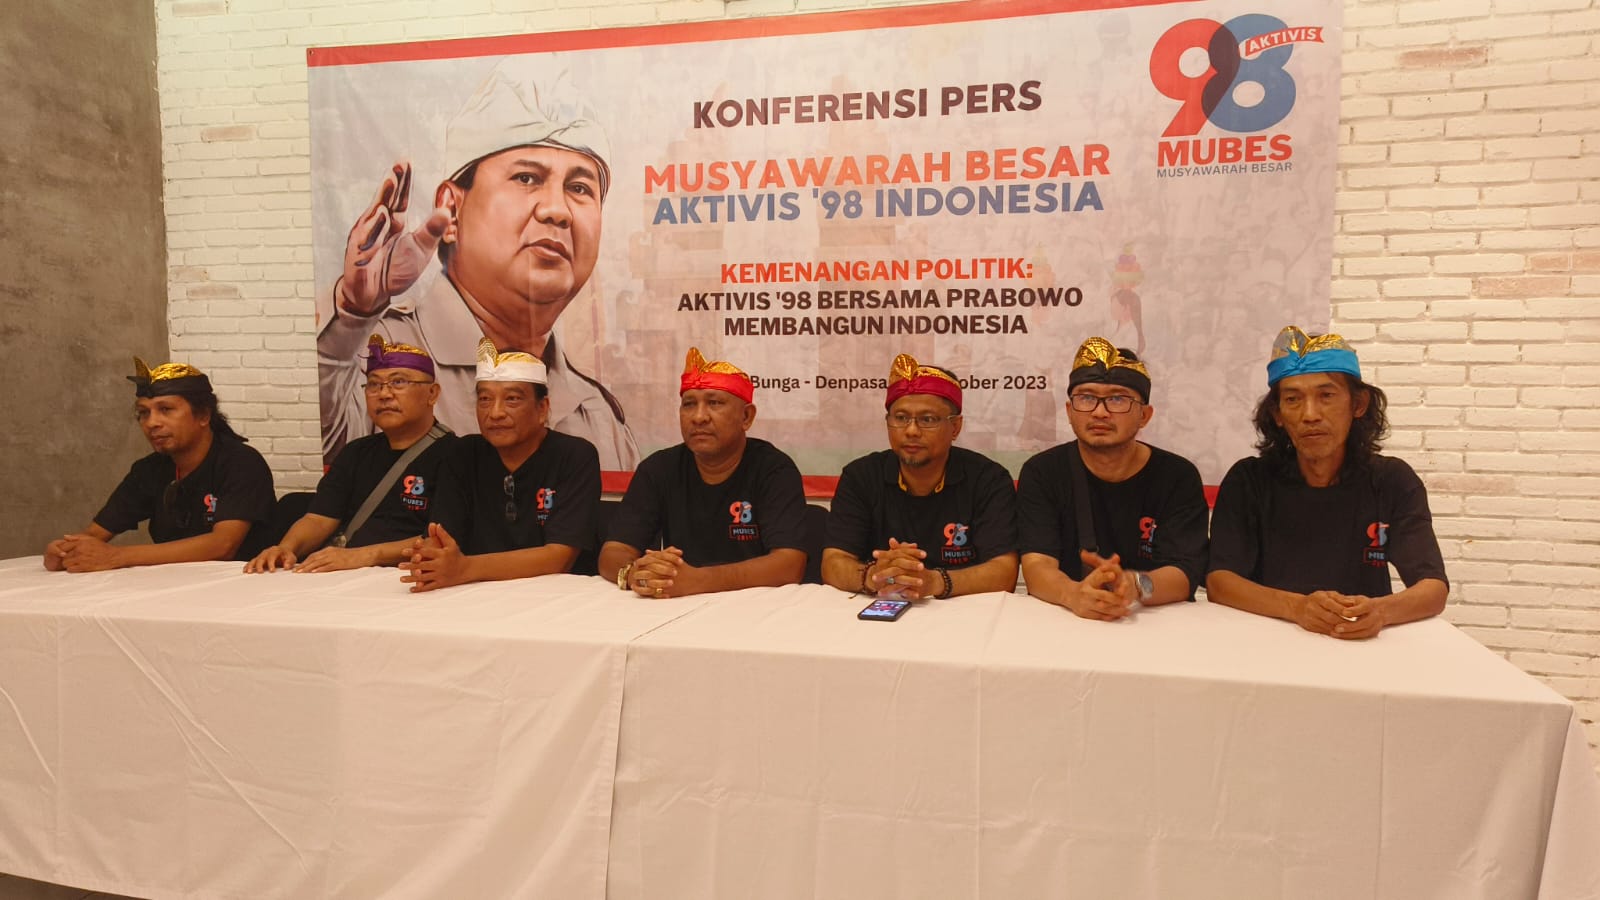 Aktivis 98 titip 5 jalan perbaikan Indonesia pada Prabowo Subianto